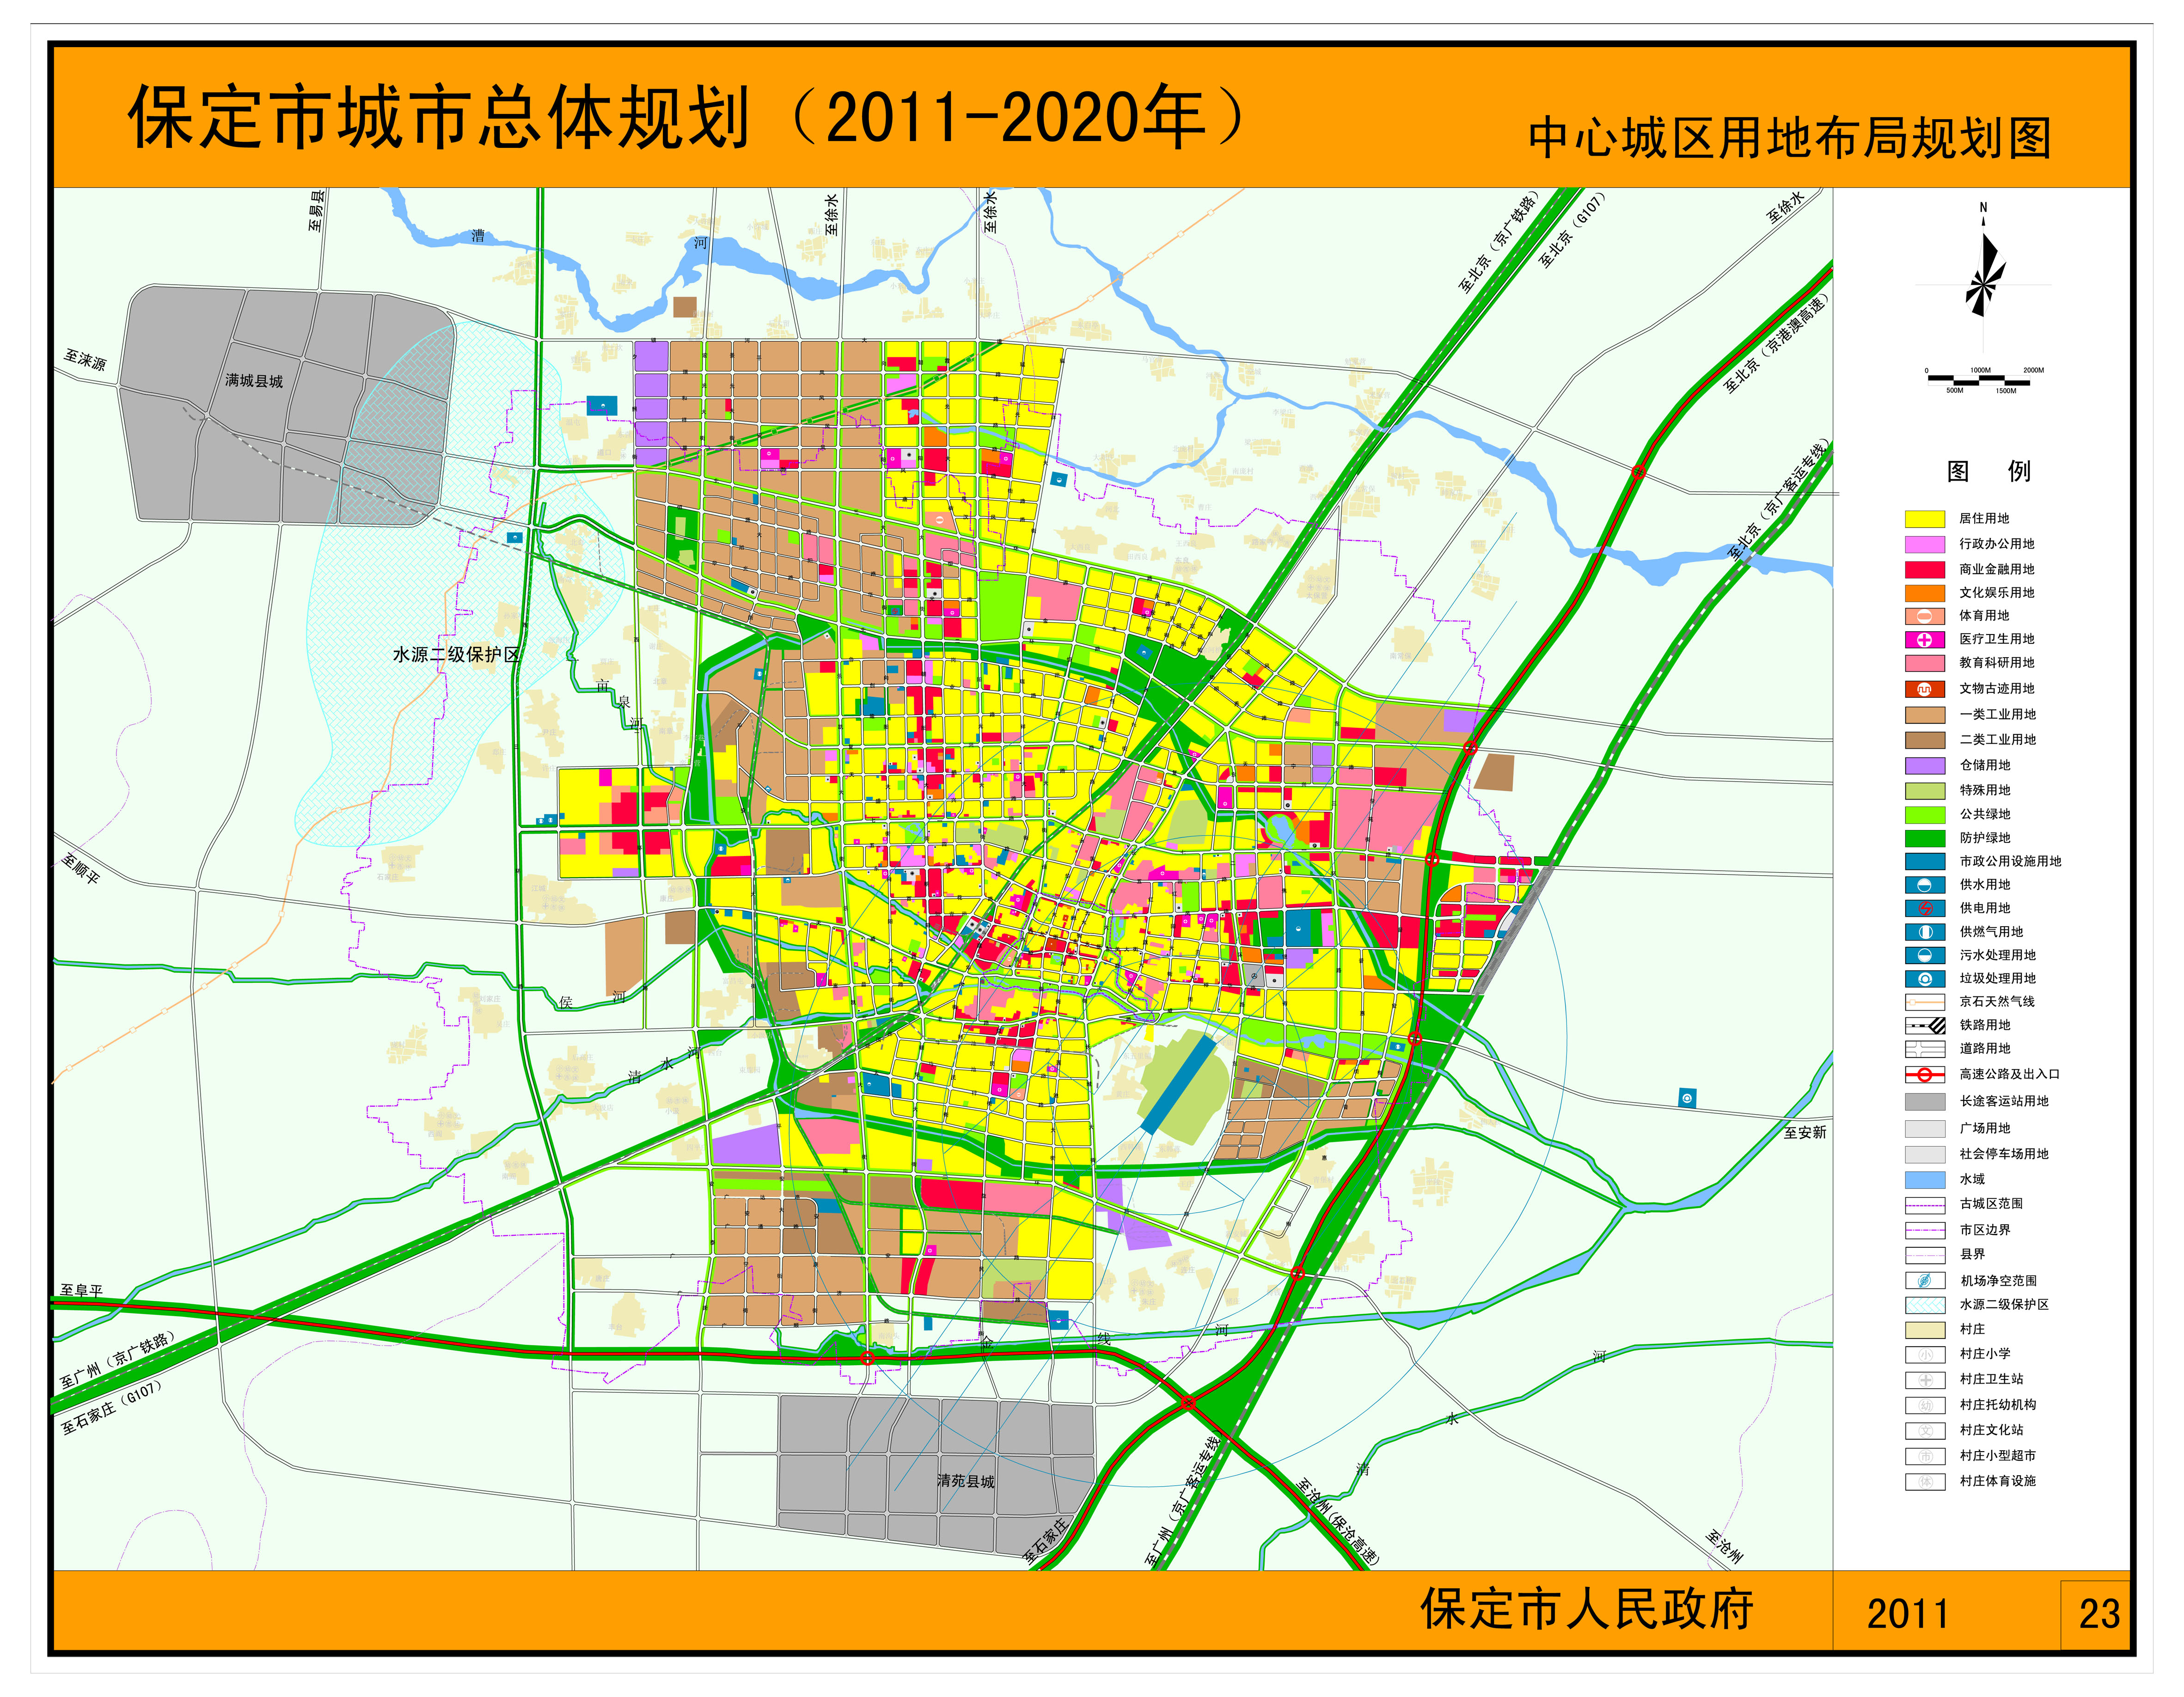 保定市城市总体规划(2011